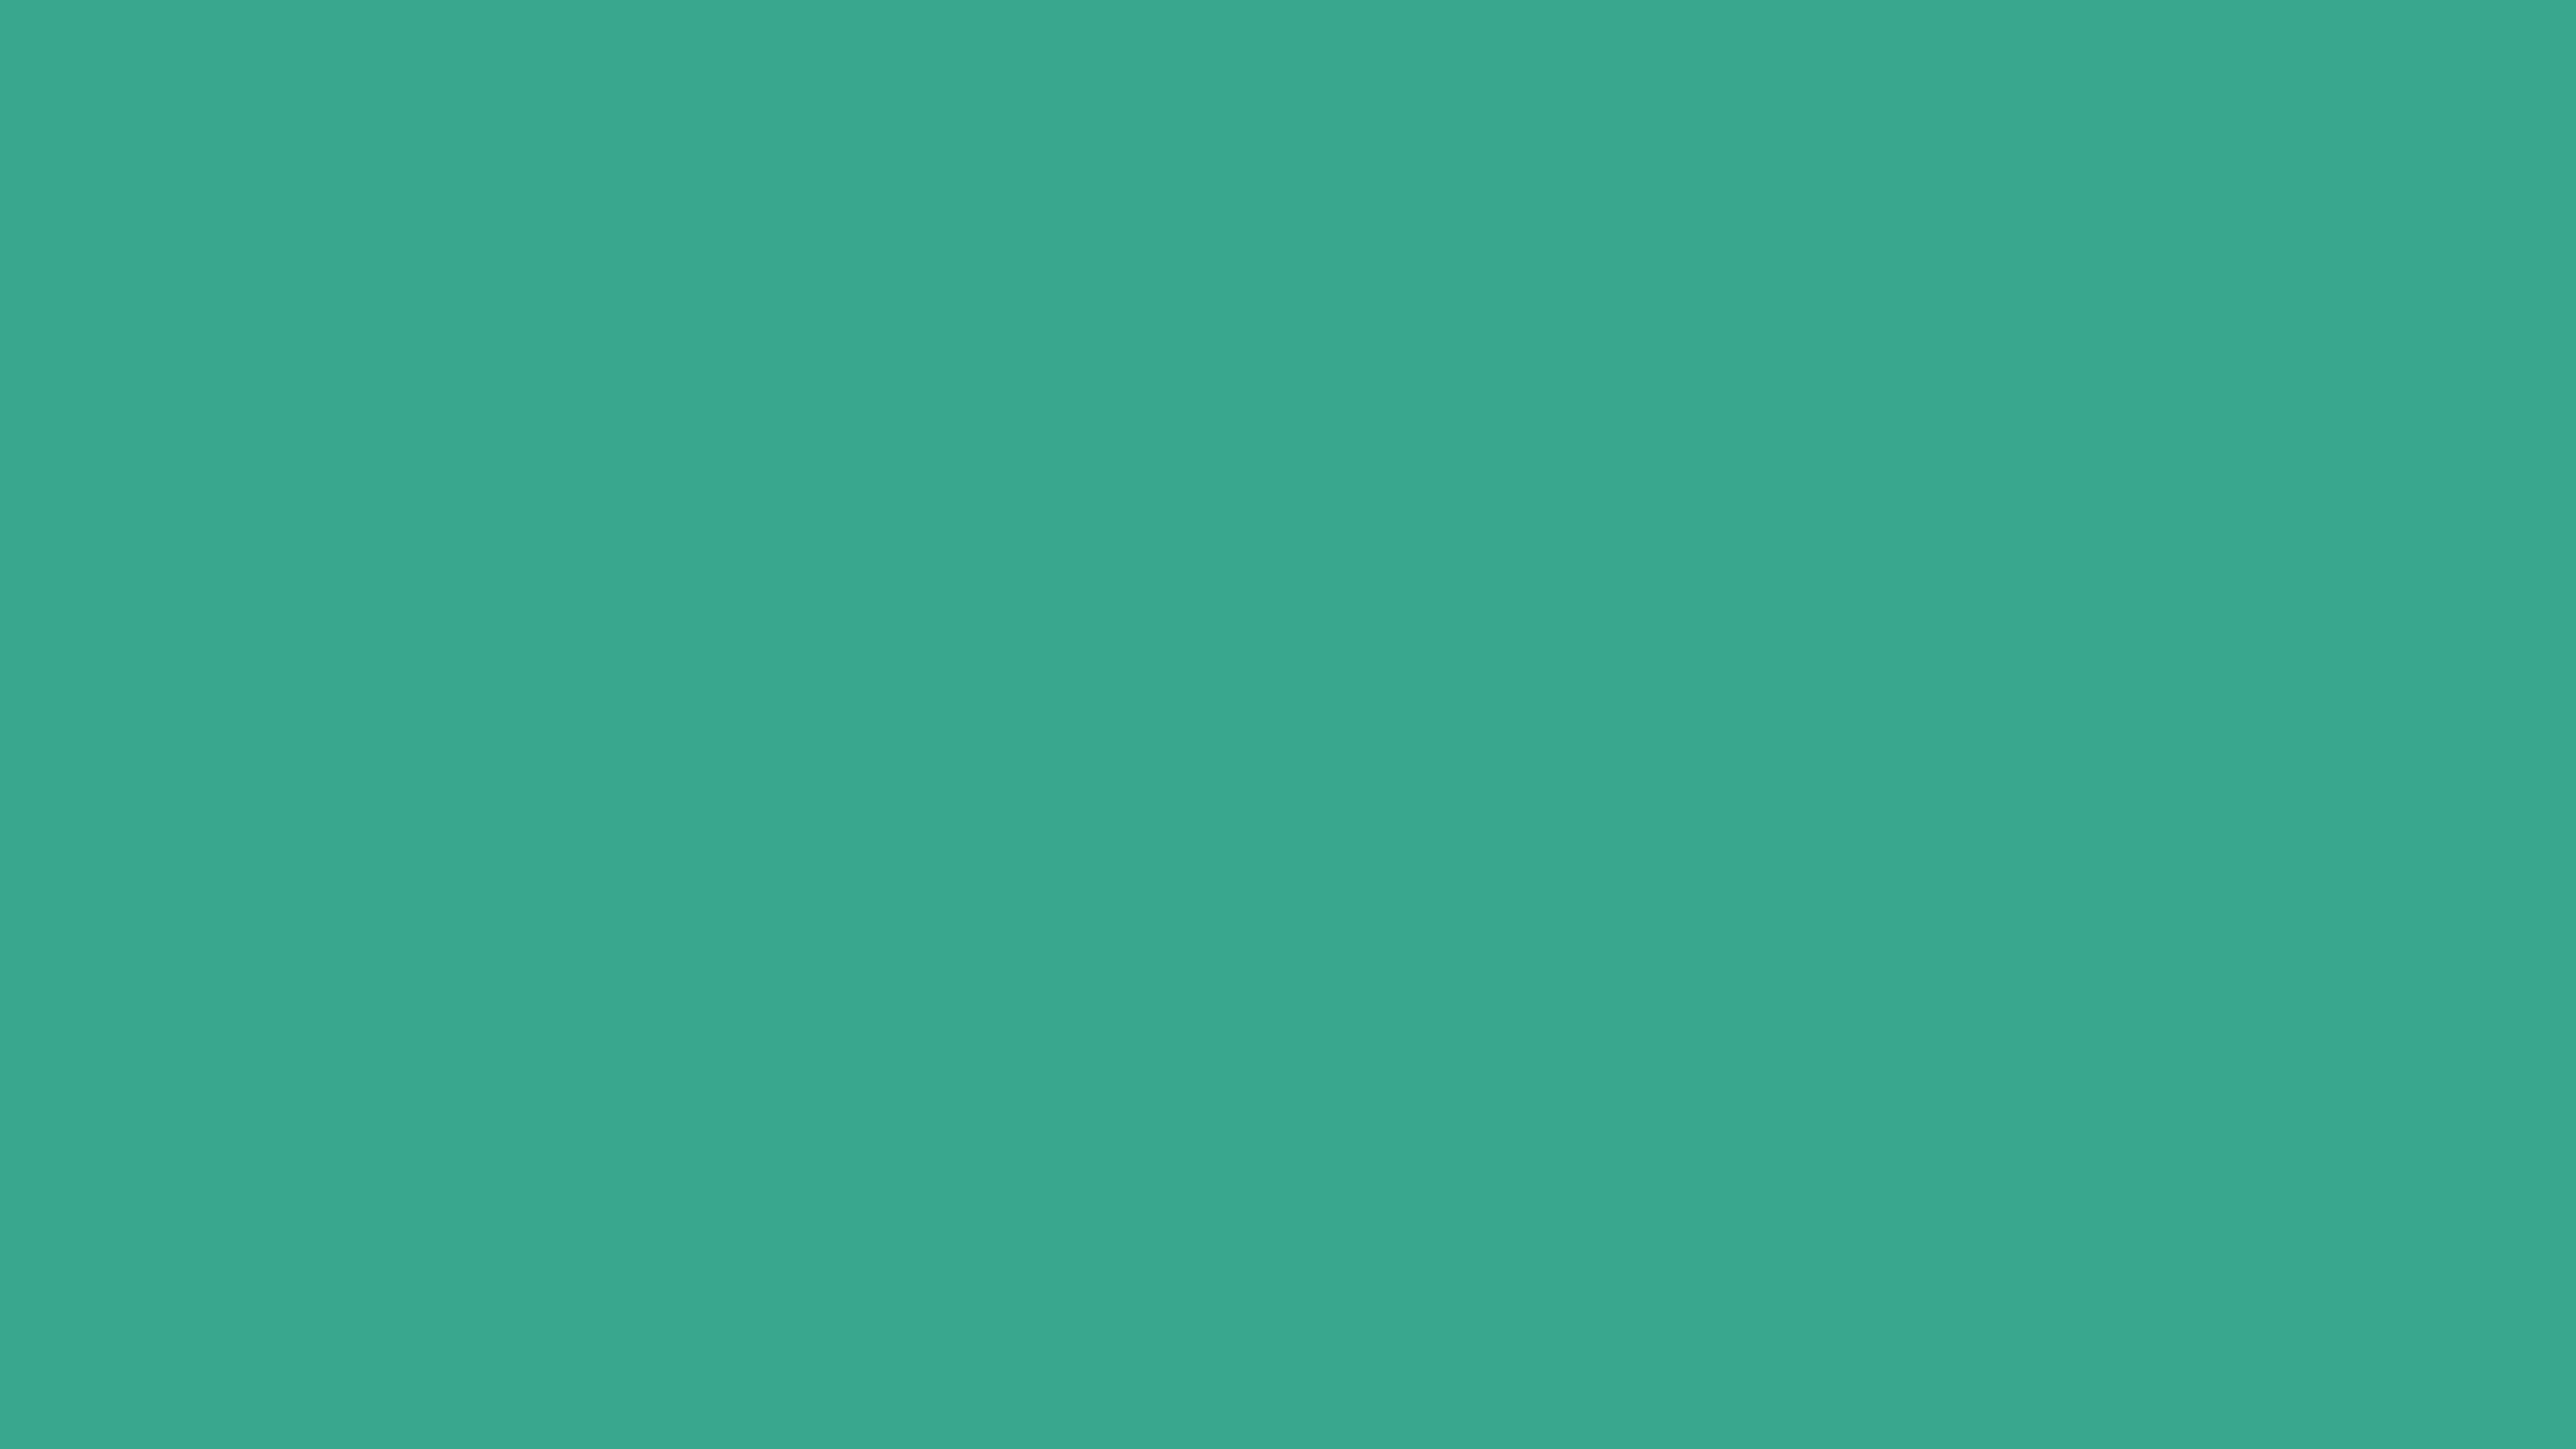 Цвет темный зеленовато синий. U655 st9 зеленый изумрудный. Рал 5009. Пленка ПВХ Аквамарин SF 013 Адилет. RAL 6005 цвет.